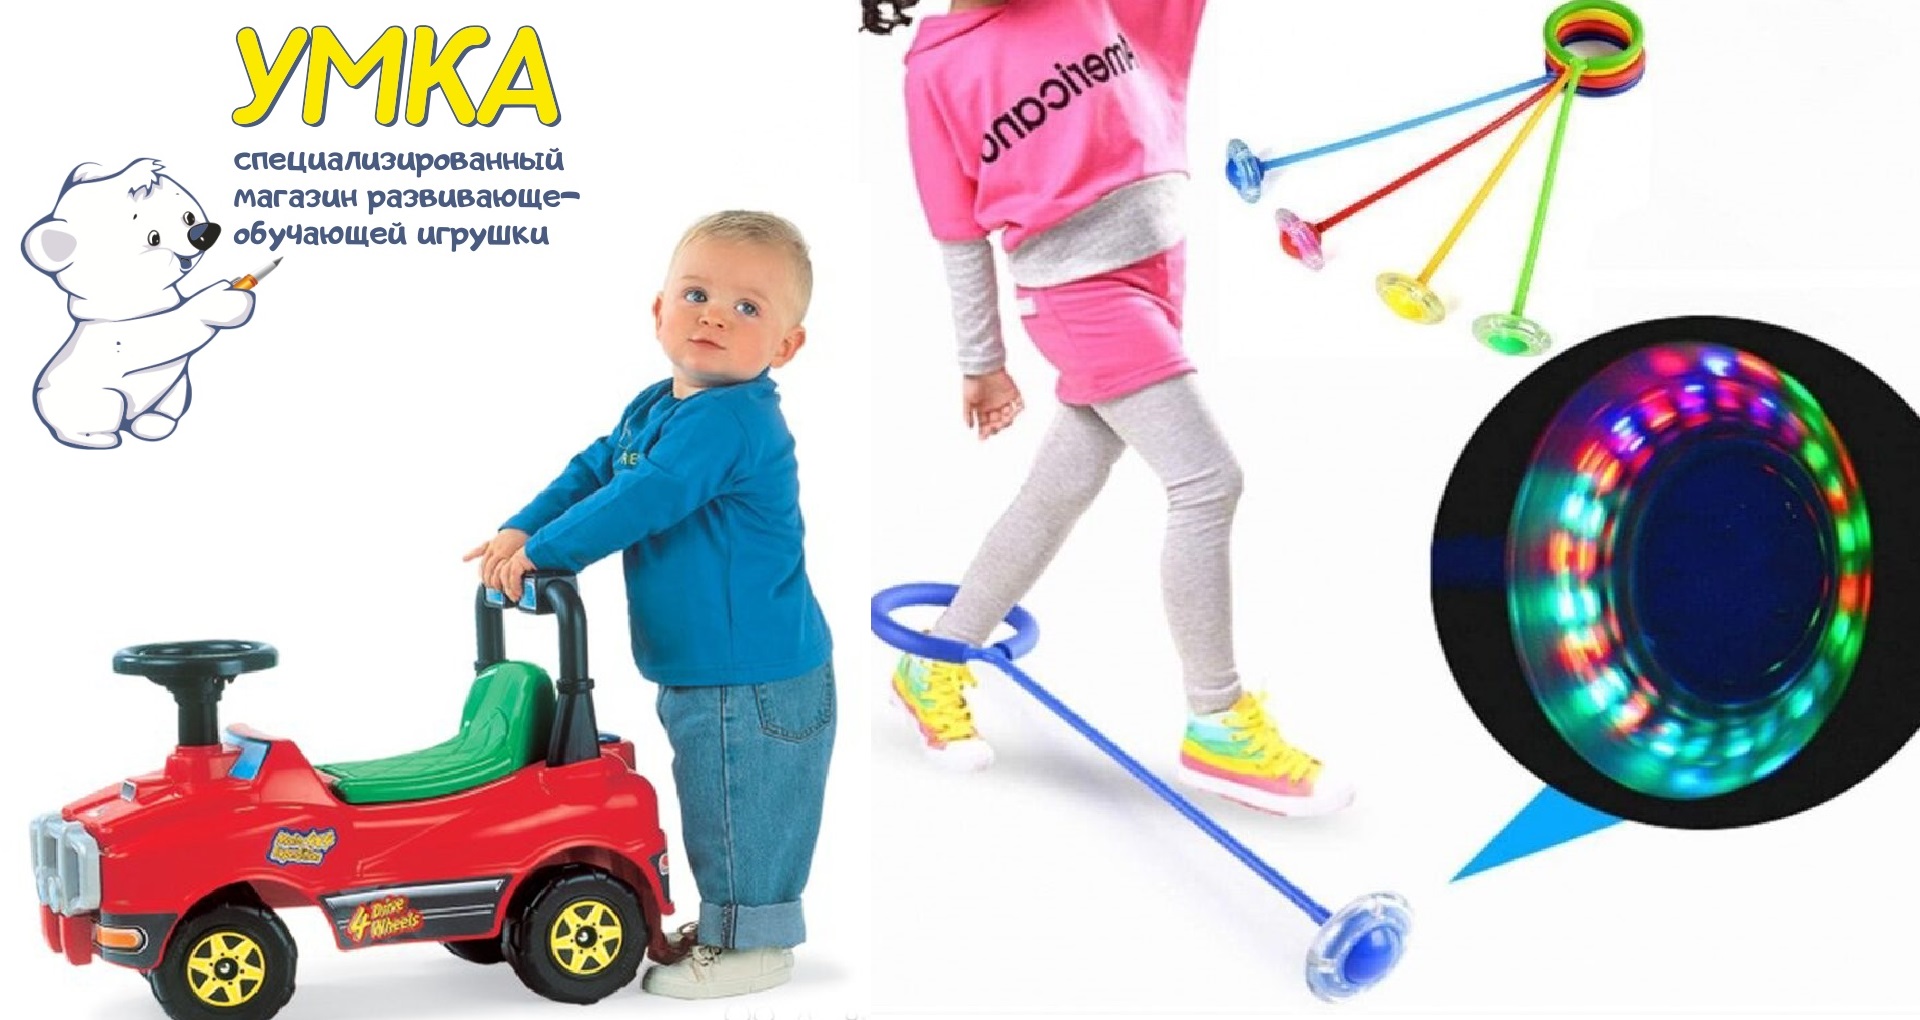 Костромским детям «Умка» привезет и Азбуку, и игрушки